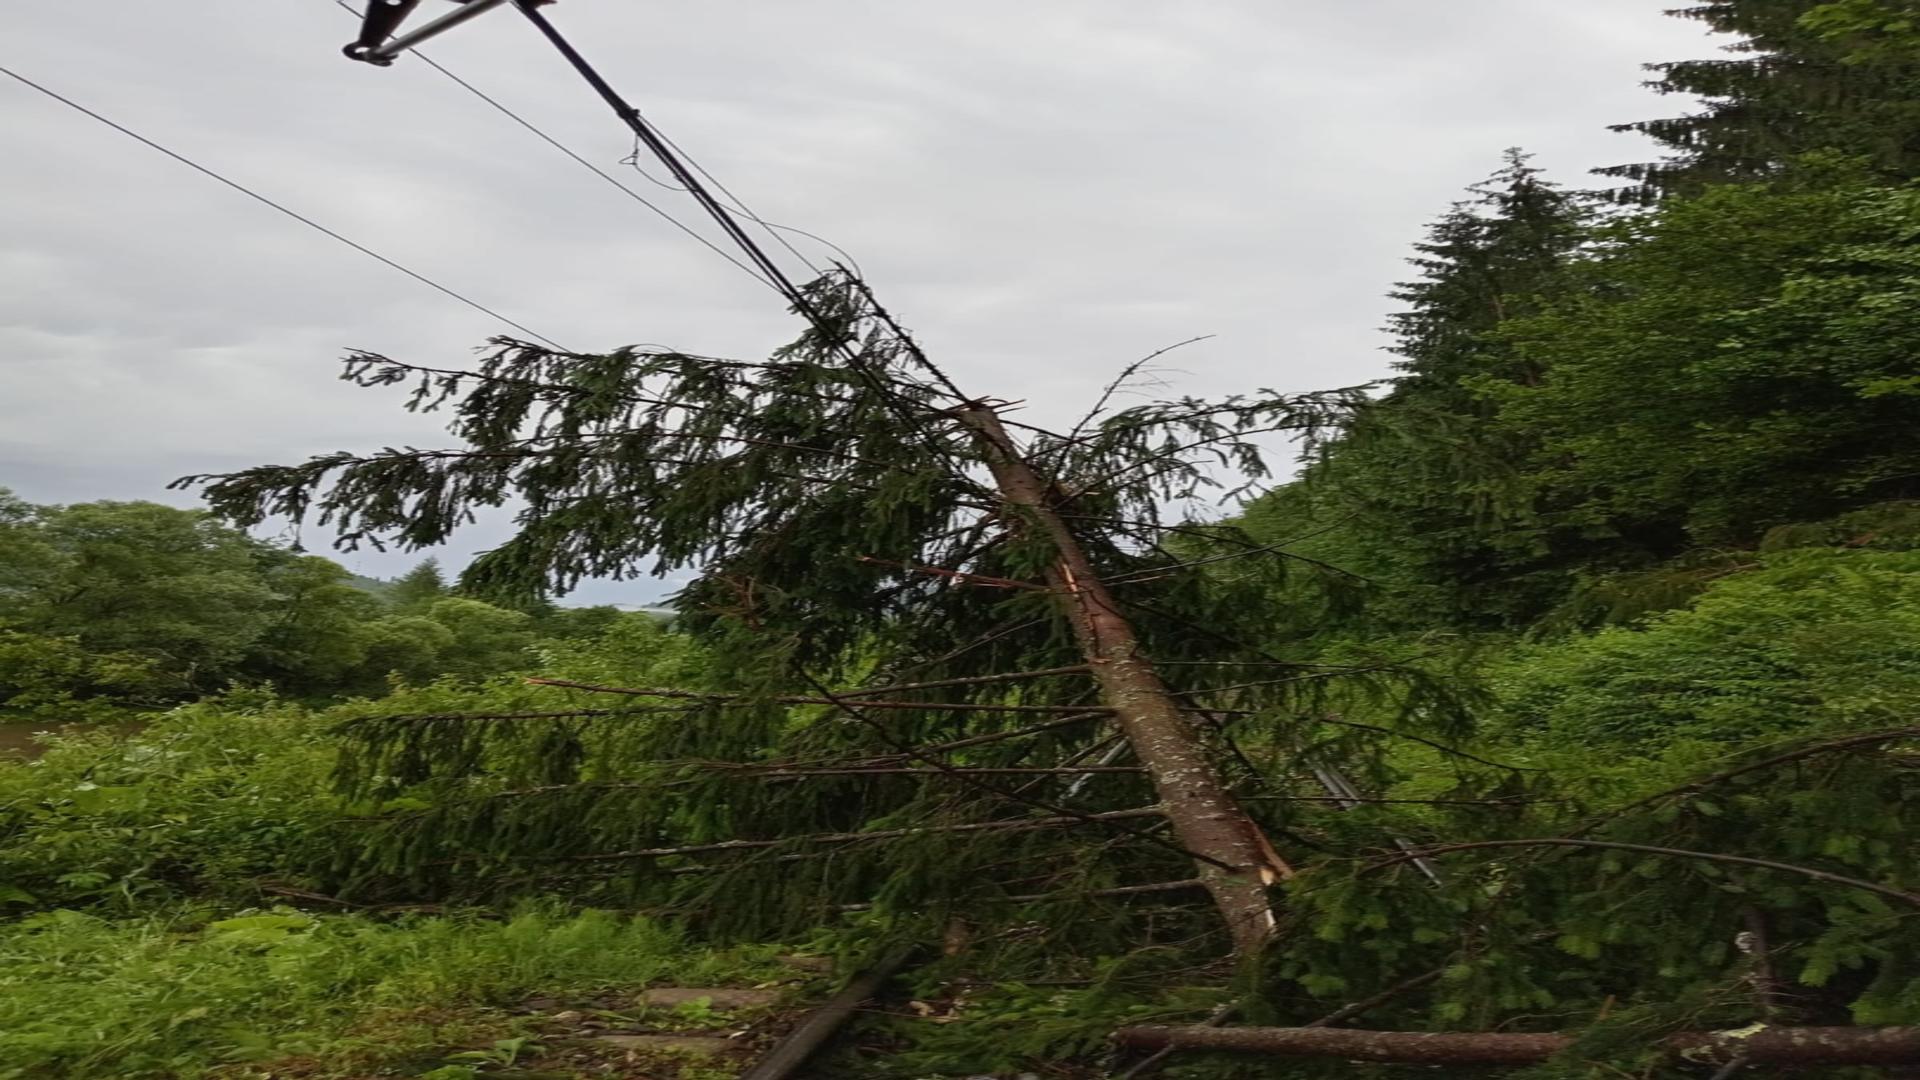 Întârziere de aproximativ 3 ore pentru un tren care circula pe ruta Mangalia-Satu Mare, din cauza unui copac căzut pe linia de alimentare cu energie electrică